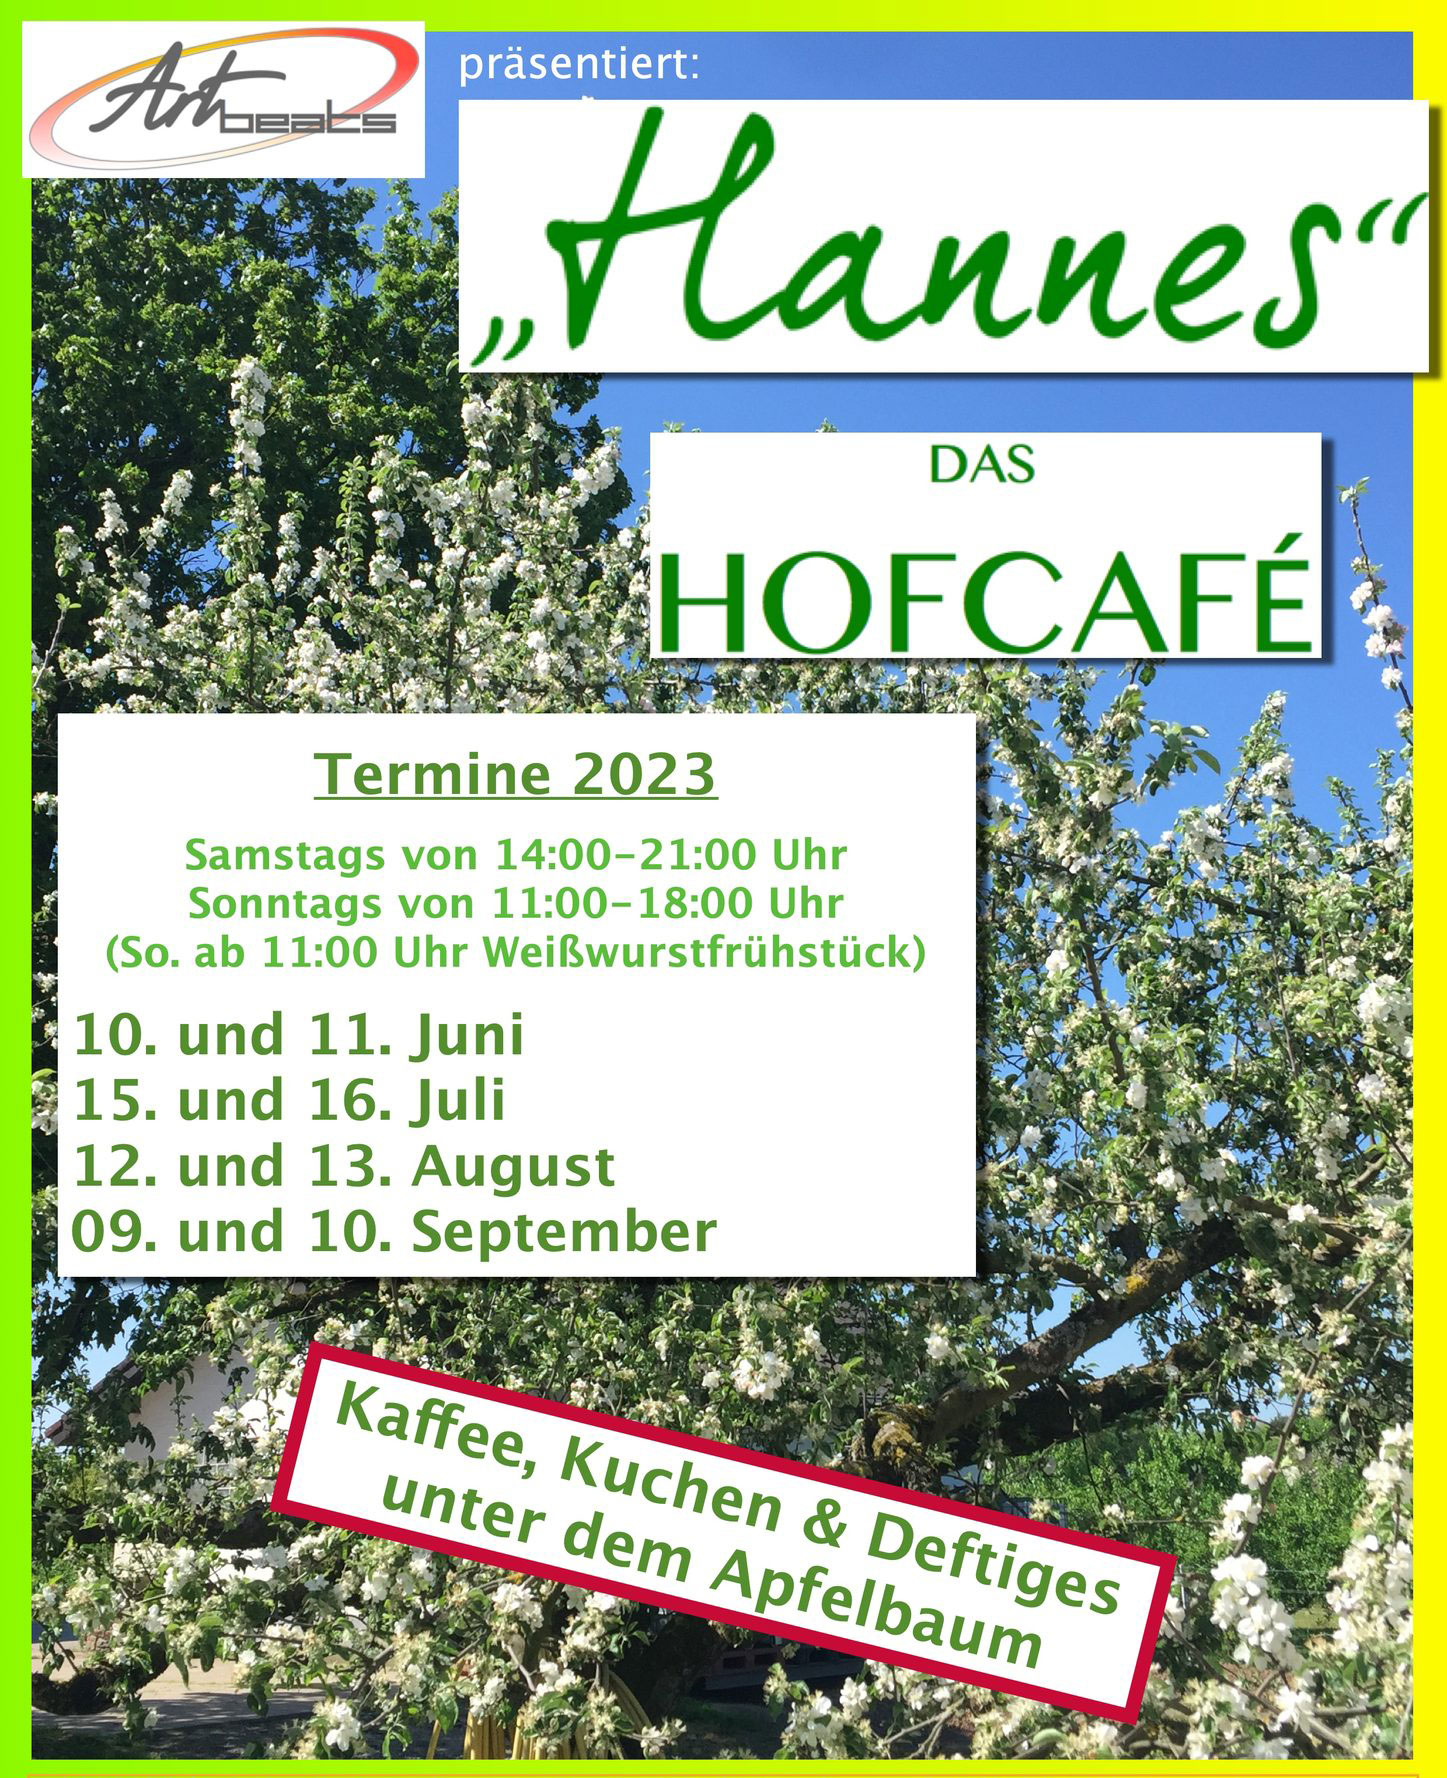 Hannes - das Hofcafé by Artbeats auf dem Aussiedlerhof 15 bei Ringelspacher